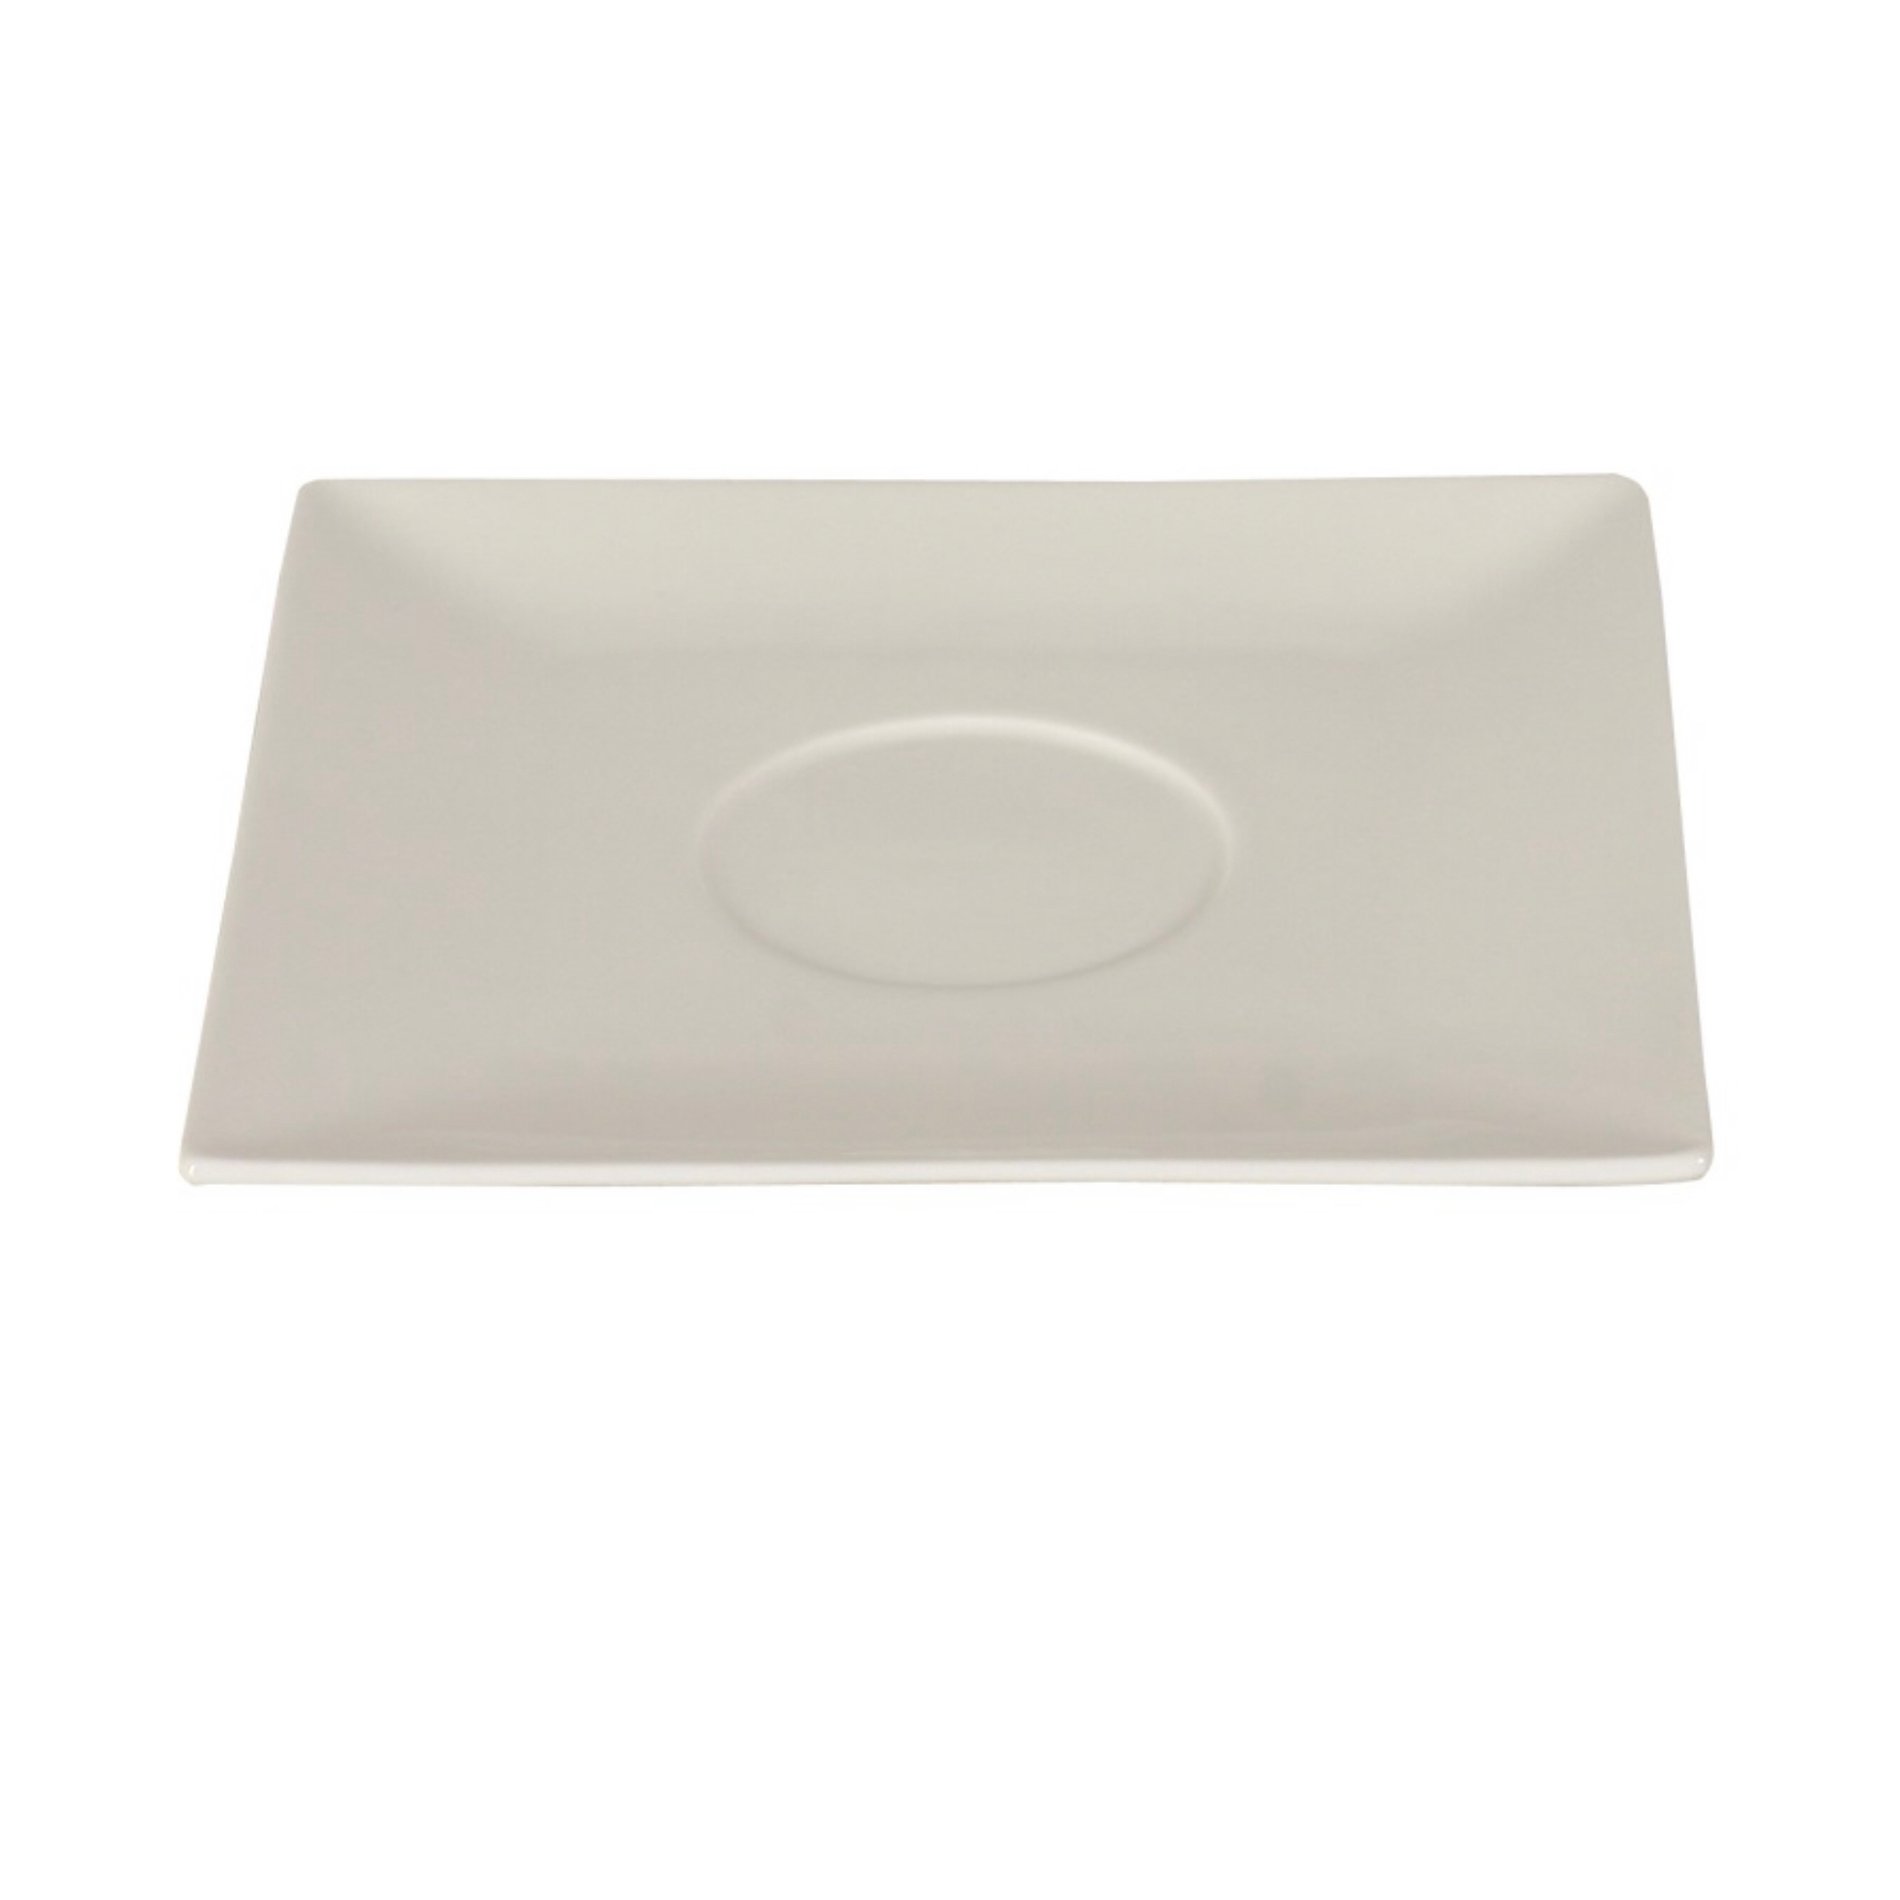 AMBITION Porto 14 x 14 cm bílý - porcelánový talíř / podšálek